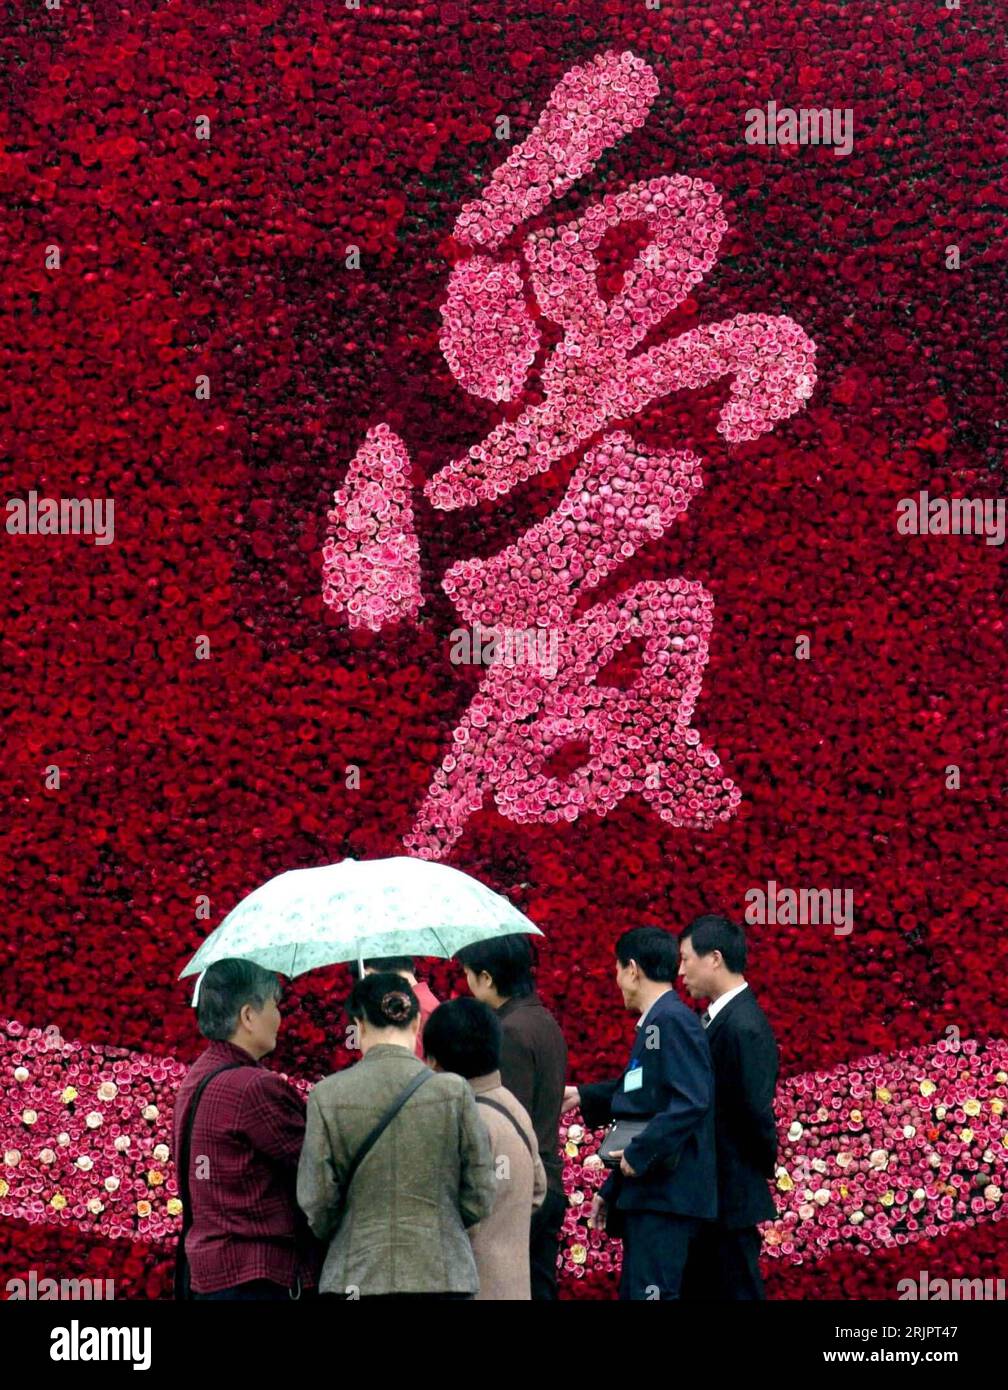 Bildnummer: 51231634  Datum: 30.04.2006  Copyright: imago/Xinhua Besucher unter einem Regenschirm stehen vor einer Rosenwand mit einem chinesischen Schriftzeichen im Baiyun Park in Guiyang - China - PUBLICATIONxNOTxINxCHN, Personen , ; 2006, Guiyang, Rose, Rosen, Blume, Blumen, Blumenwand, Blumenwände, Rosenwände, Rose, Rosen, Chinese, Chinesin, Chinesen, Einheimische, Einheimischer, Besucher, Besucherin, Blumenmeer, Blüte, Blüten, Rosenblüte, Rosenblüten, Blütenmeer, rosa, rot, chinesisch, chinesische, chinesisches; , hoch, Kbdig, Totale, China,  , Stock Photo